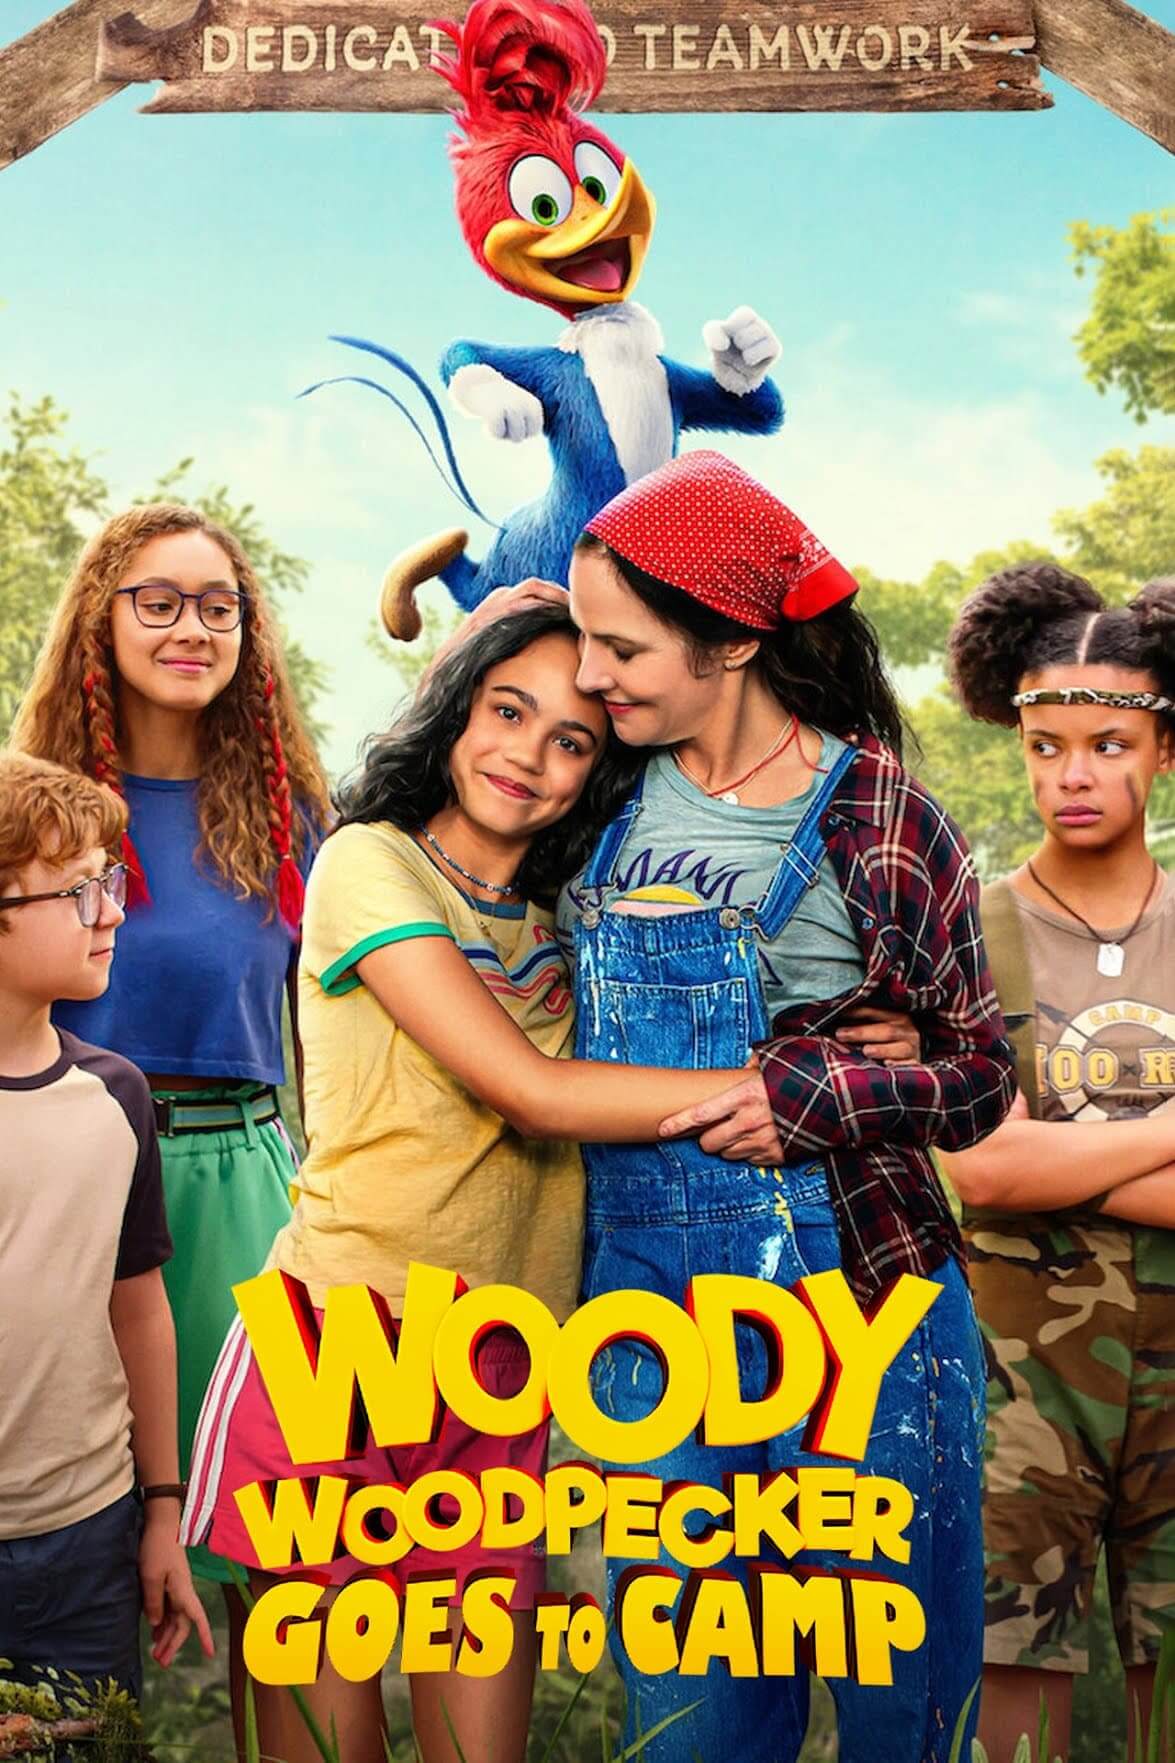 وودی دارکوب به کمپ می رود (Woody Woodpecker Goes to Camp)